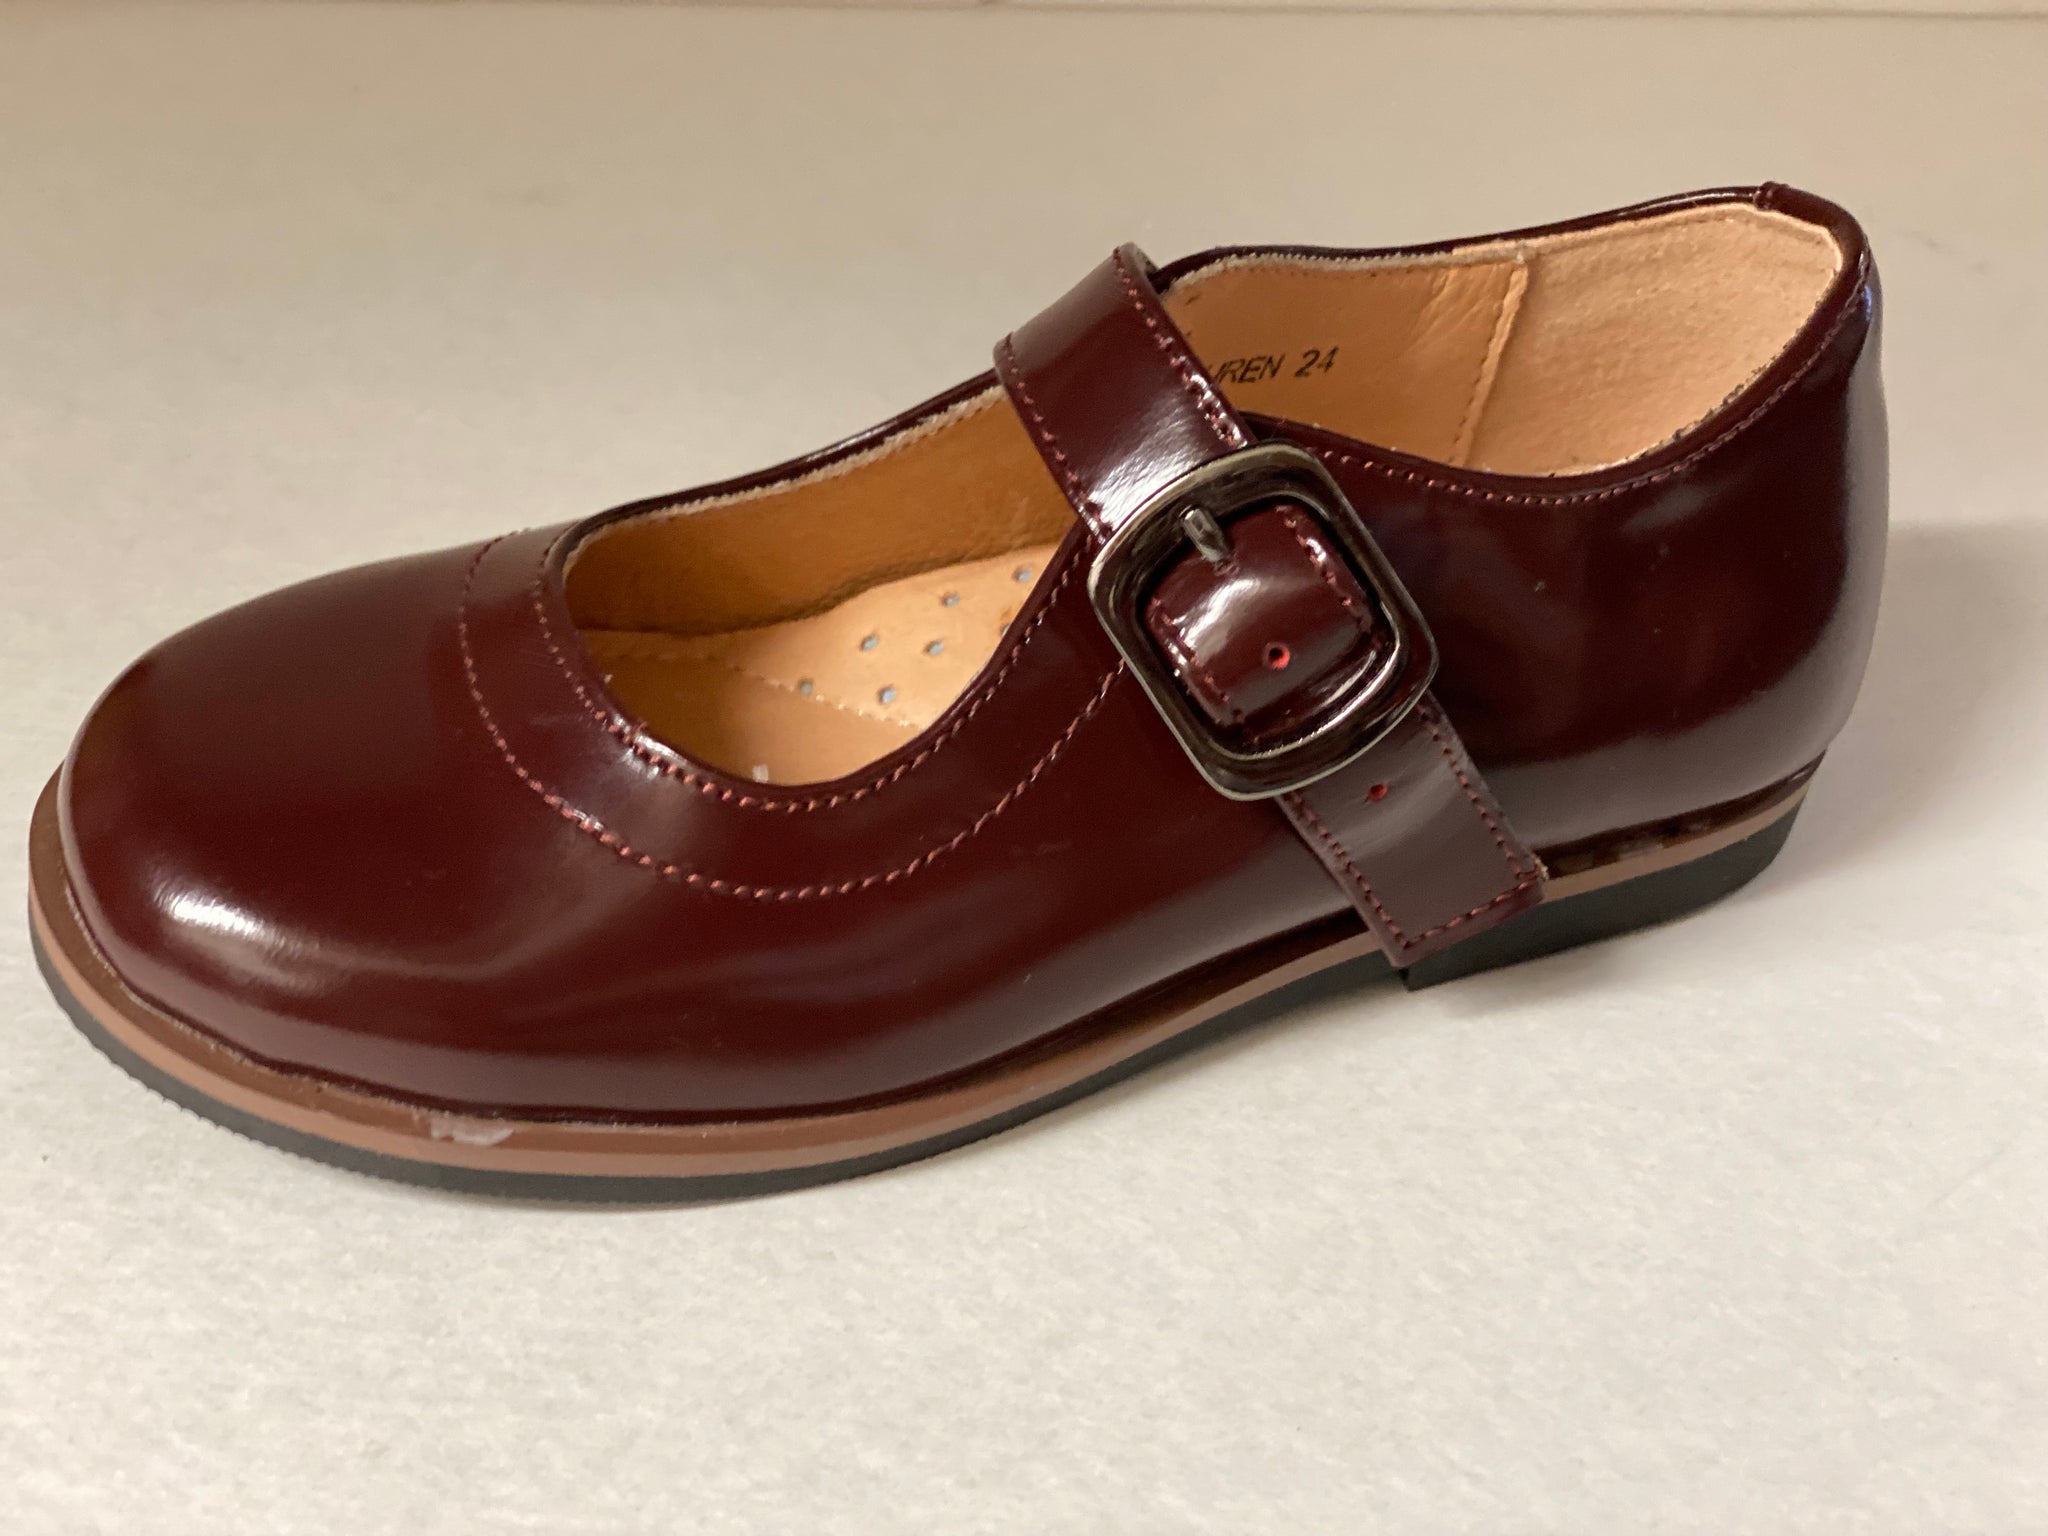 SALE Giovanni Lauren Mary Jane School Shoe – La Elegante Shoes